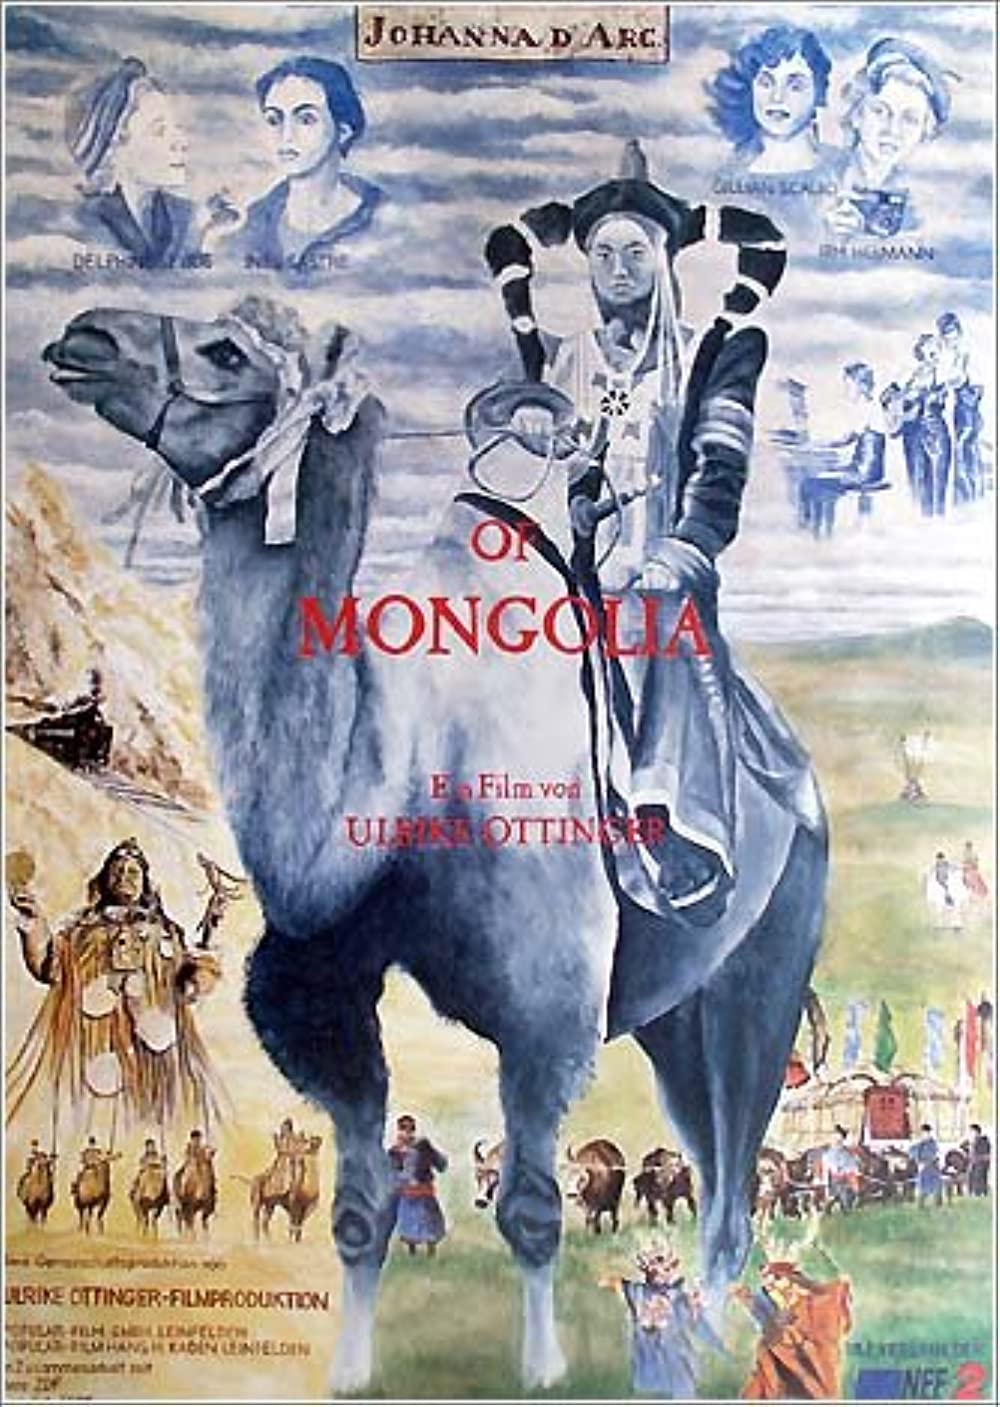 Filmbeschreibung zu Johanna D'Arc of Mongolia